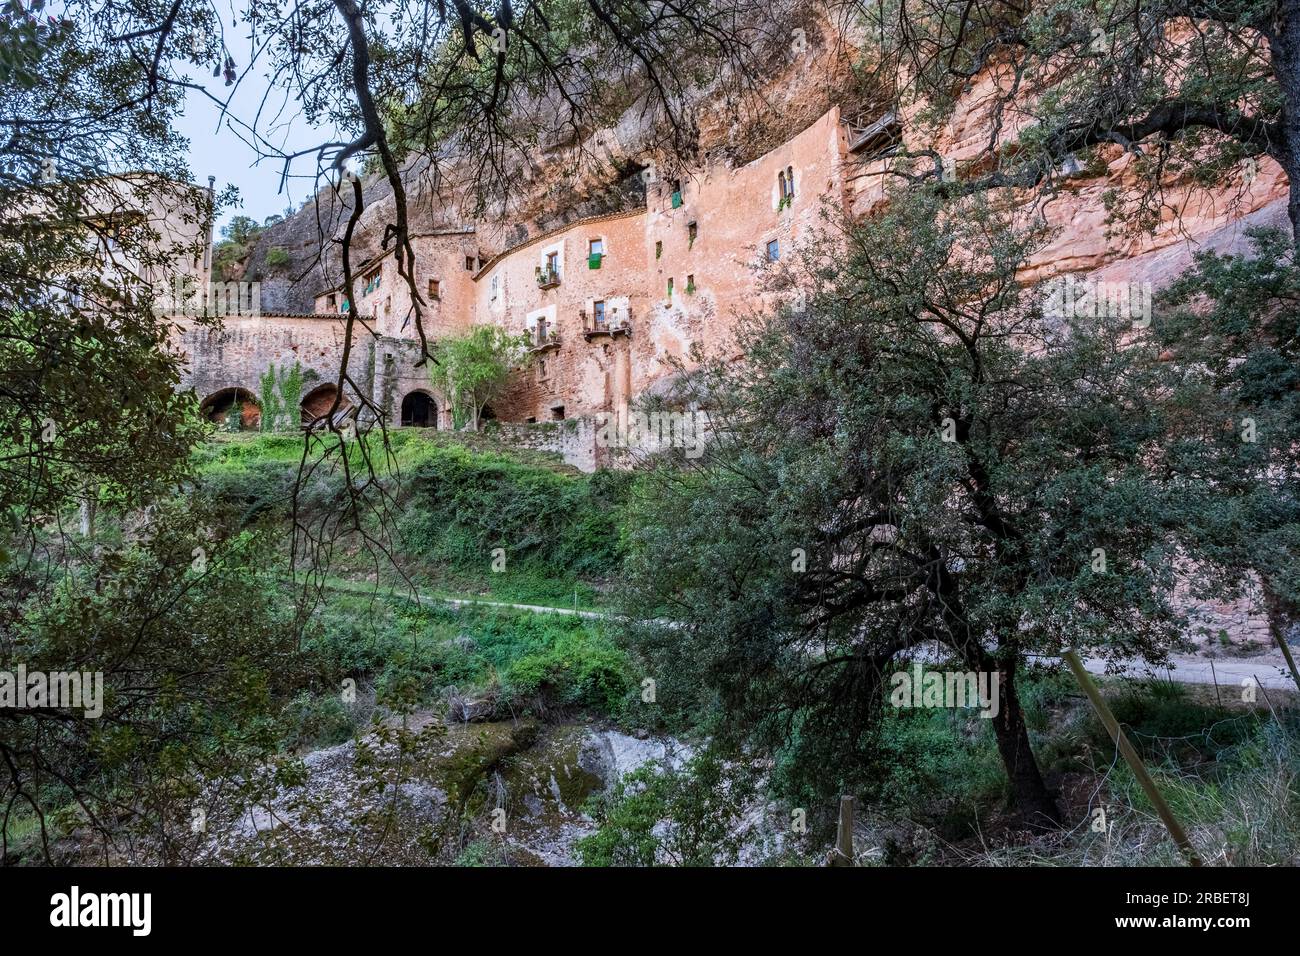 Gesamtblick auf Casal del Puig de la Balma, ein altes Bauernhaus aus dem 12. Jahrhundert, das in den Felsen gehauen wurde, ein Werk der Gemeinde Mura (Spanien) Stockfoto